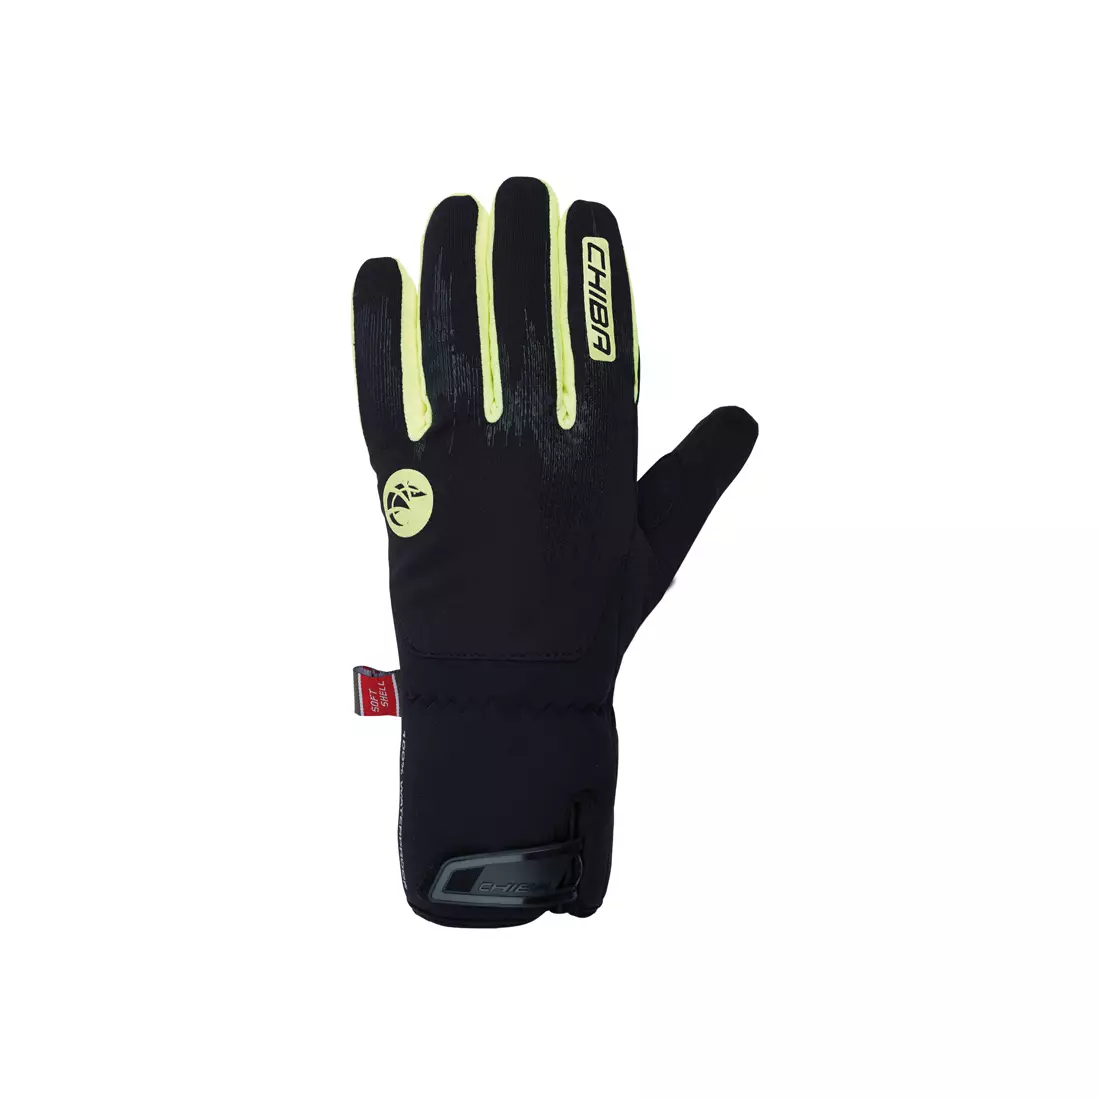 CHIBA DRY STAR SUPERLIGHT zimní cyklistické rukavice, černo-fluor žlutá 31217